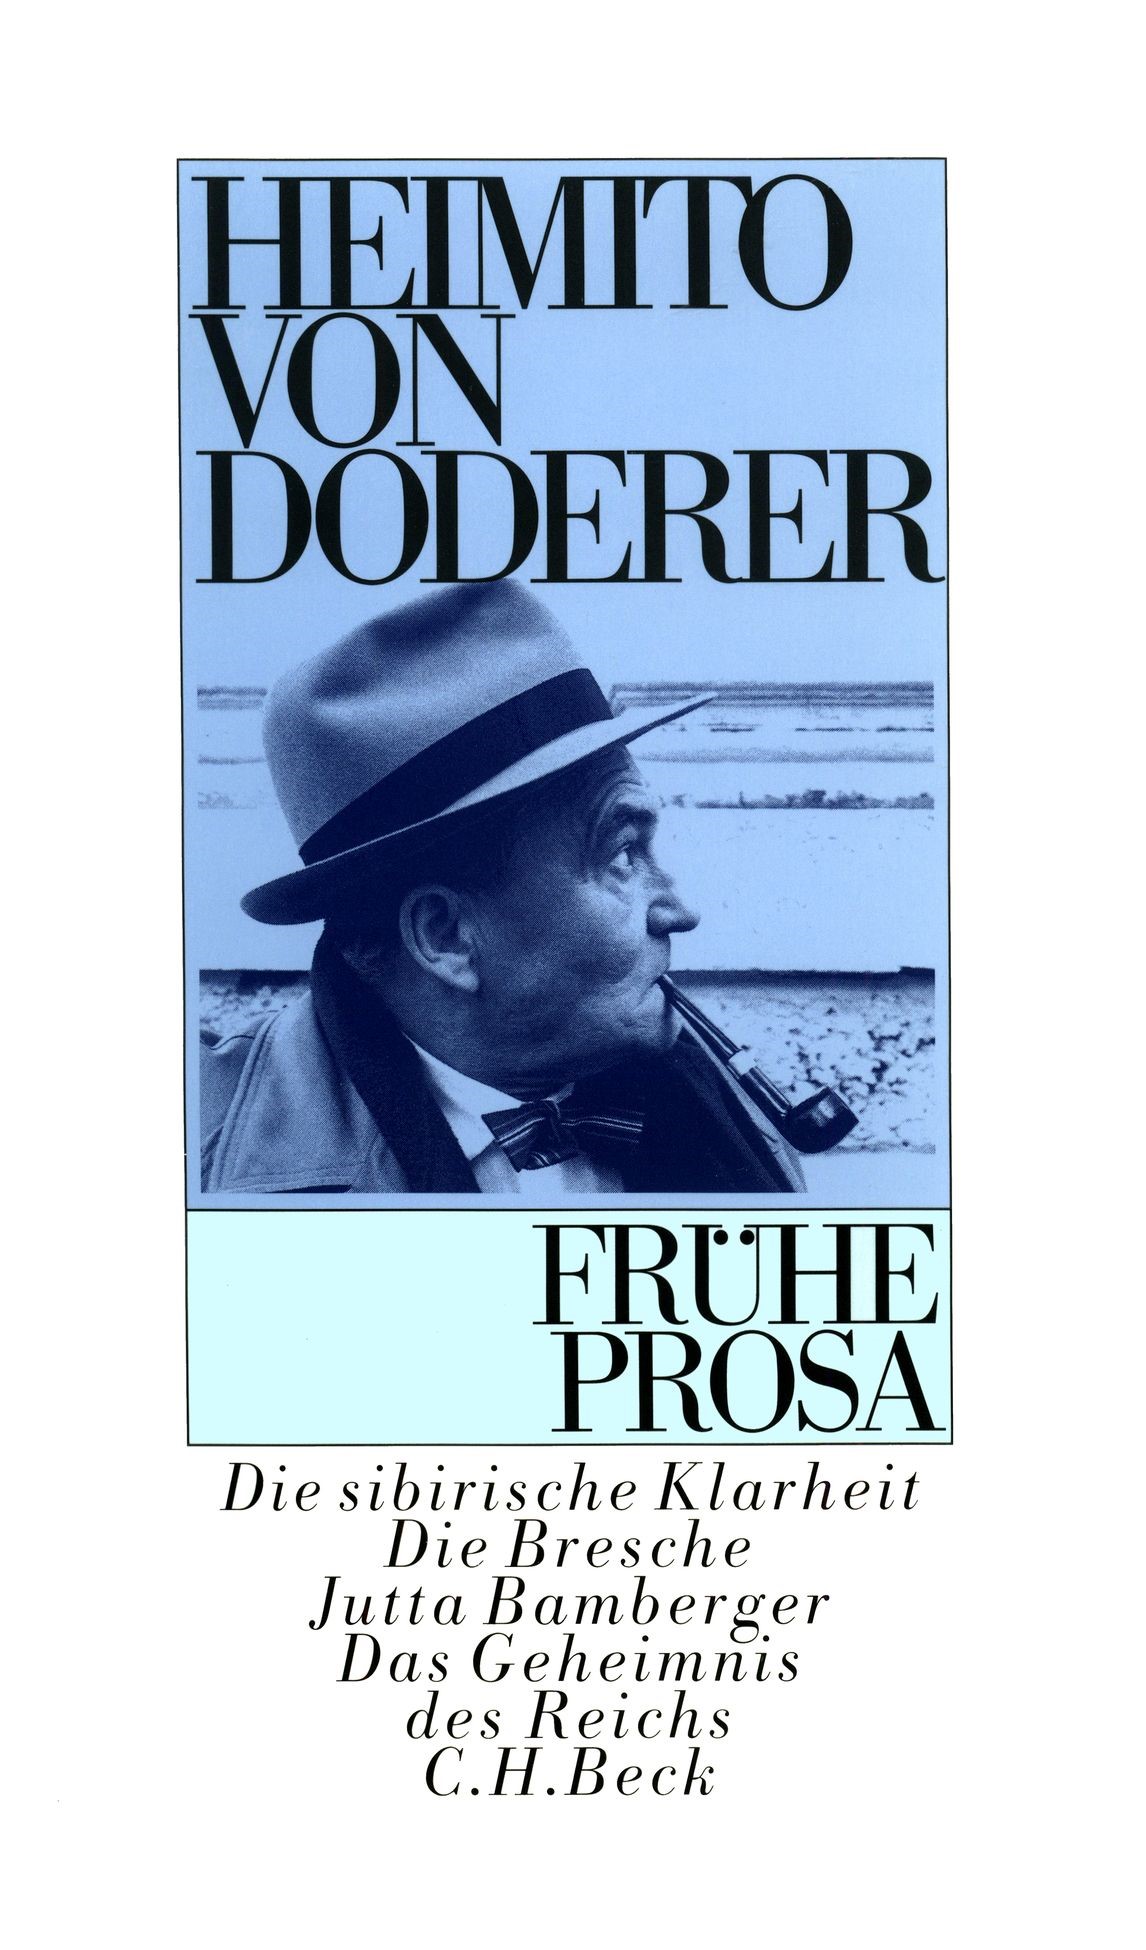 Cover: Doderer, Heimito von, Frühe Prosa